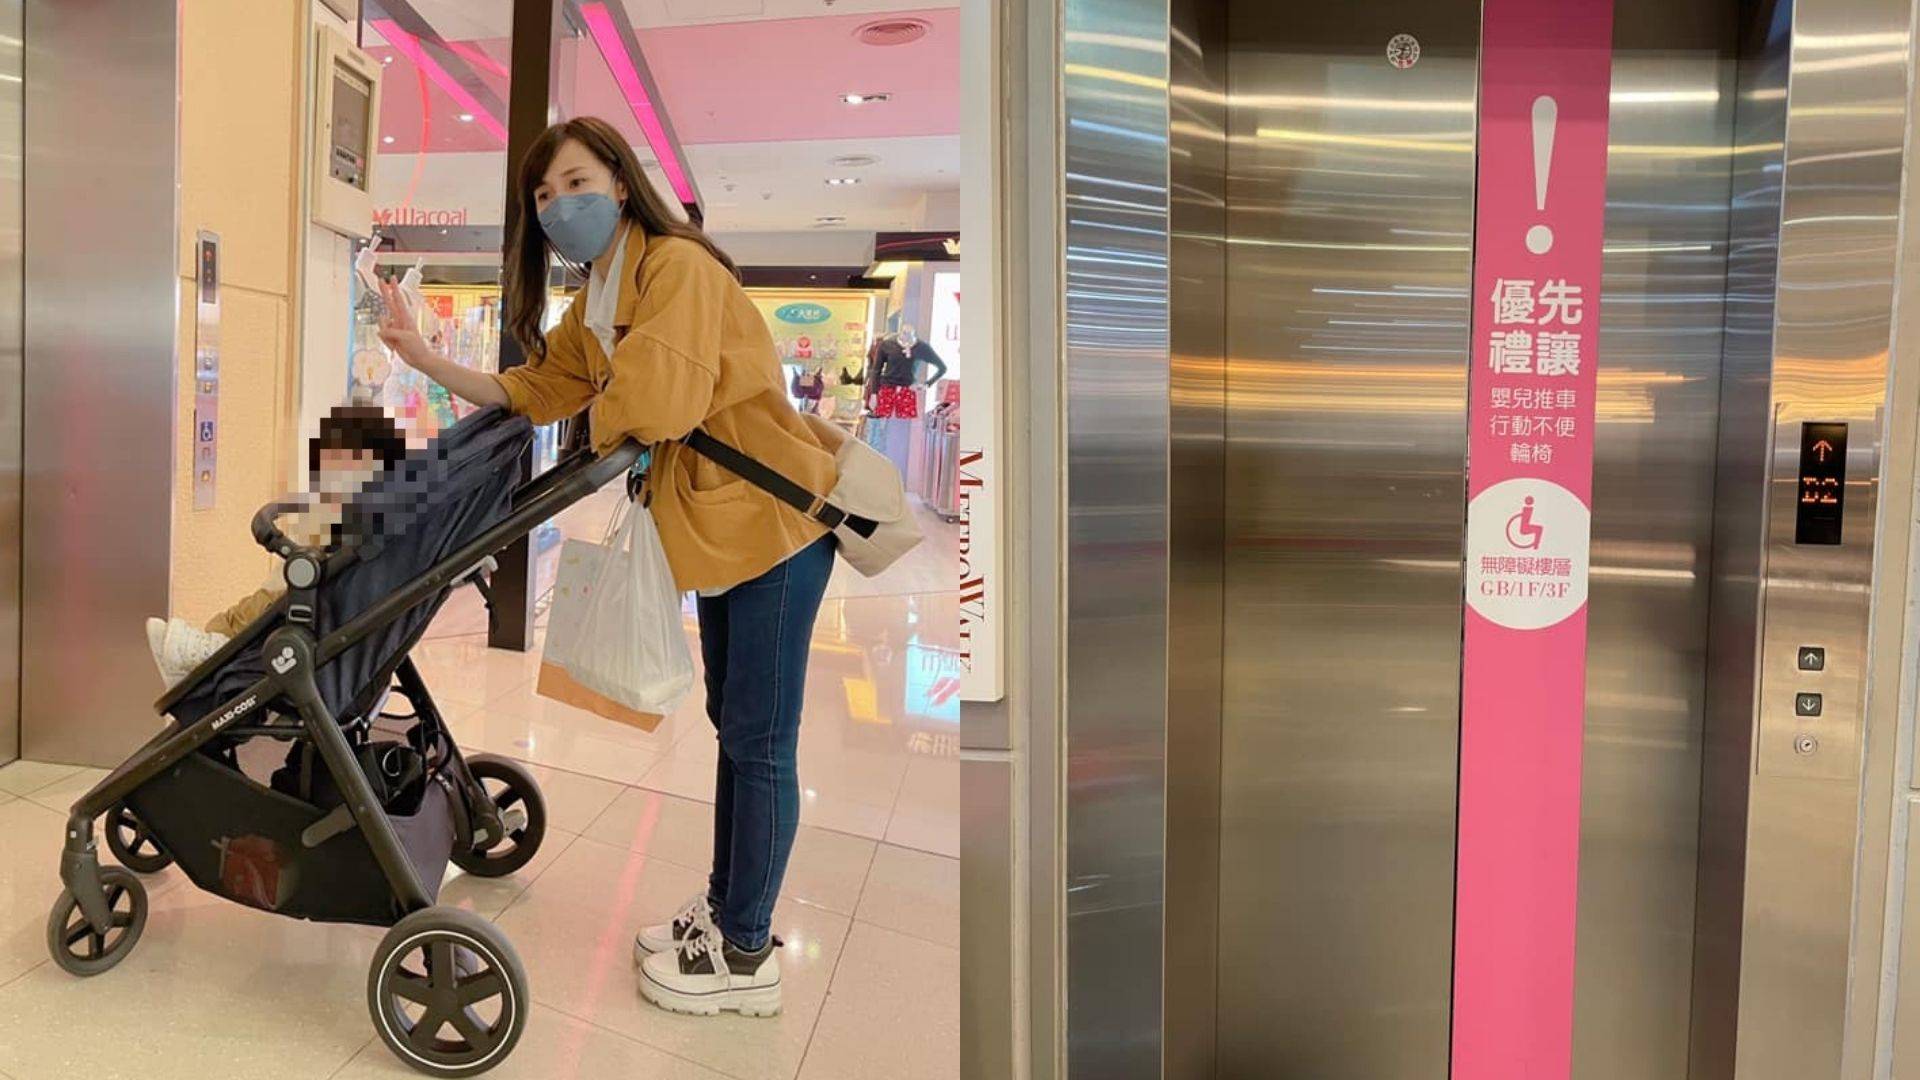 傑哥在百貨公司推嬰兒車搭電梯無人禮讓還被翻白眼